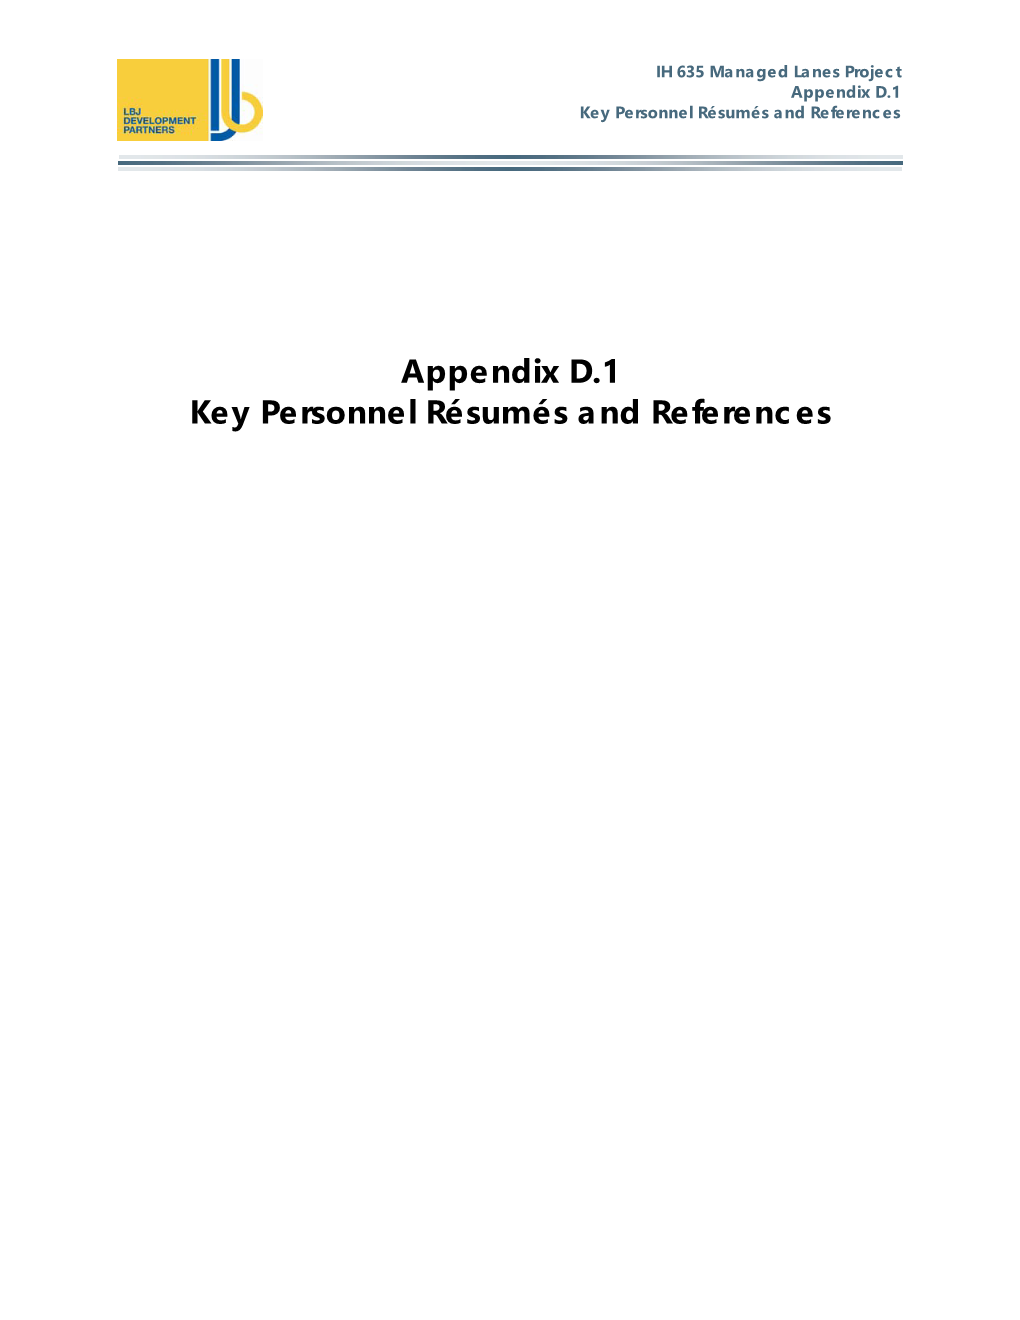 Appendix D.1 Key Personnel Résumés and References